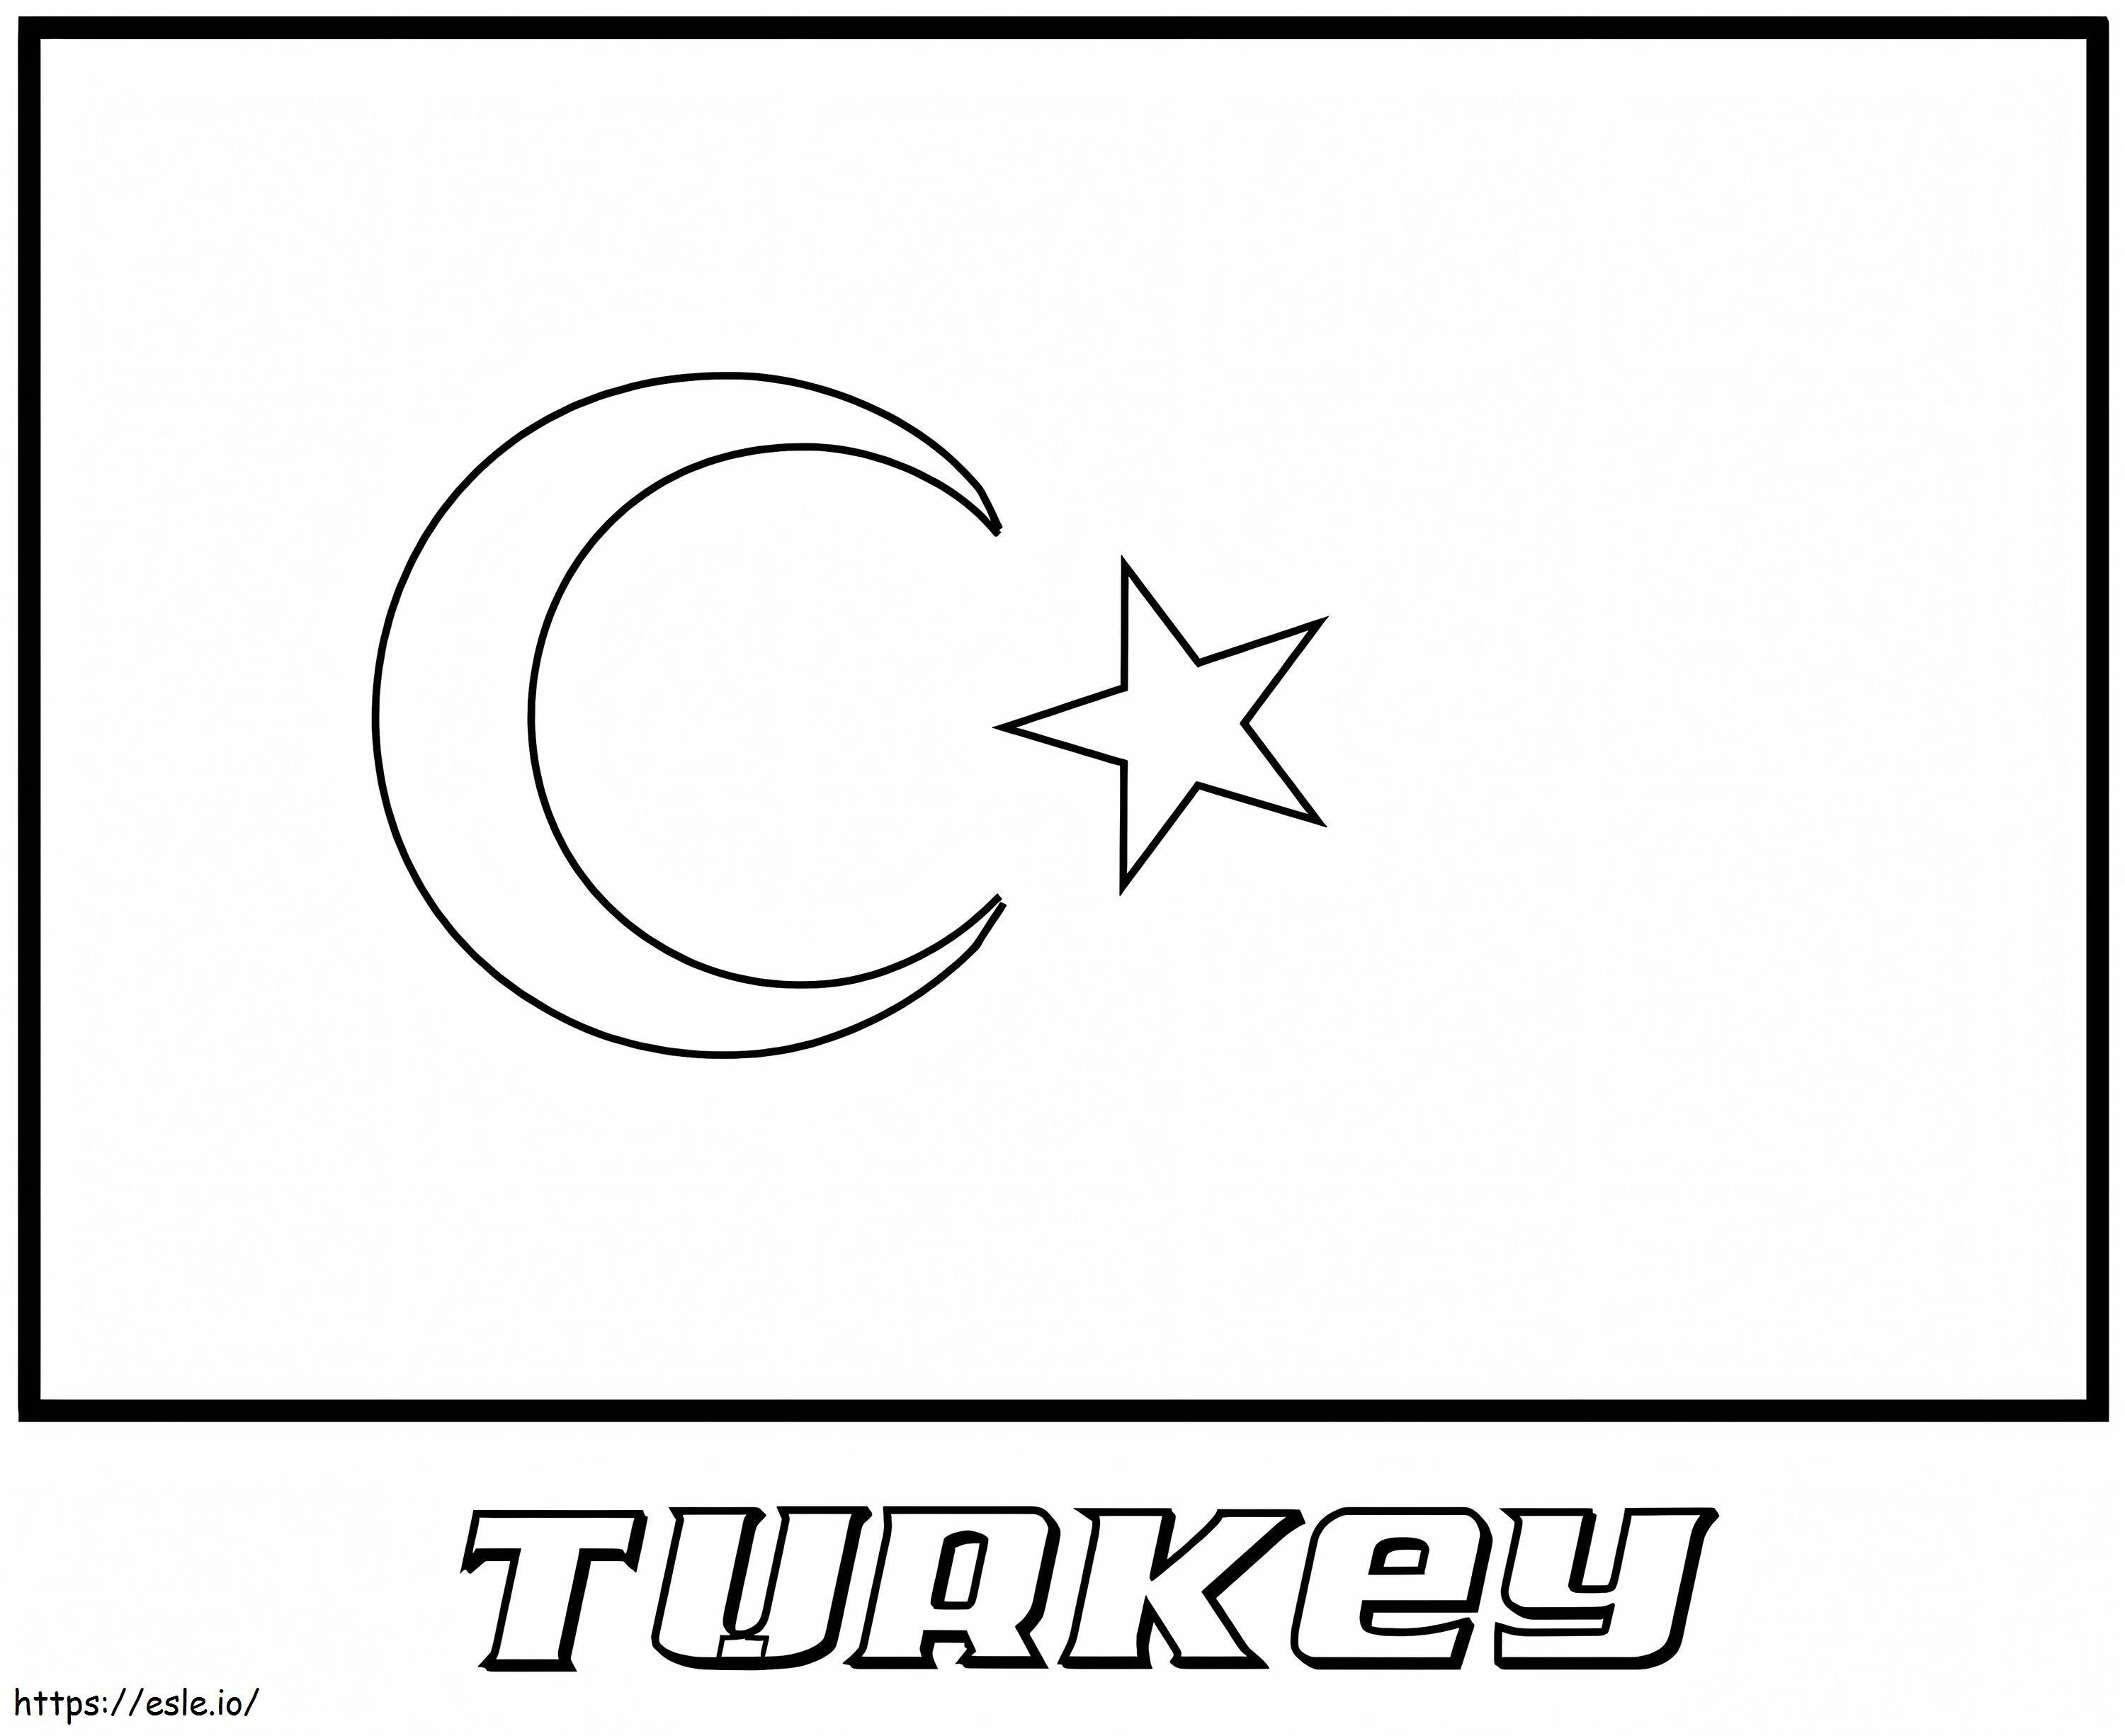 Bandiera della Turchia da colorare